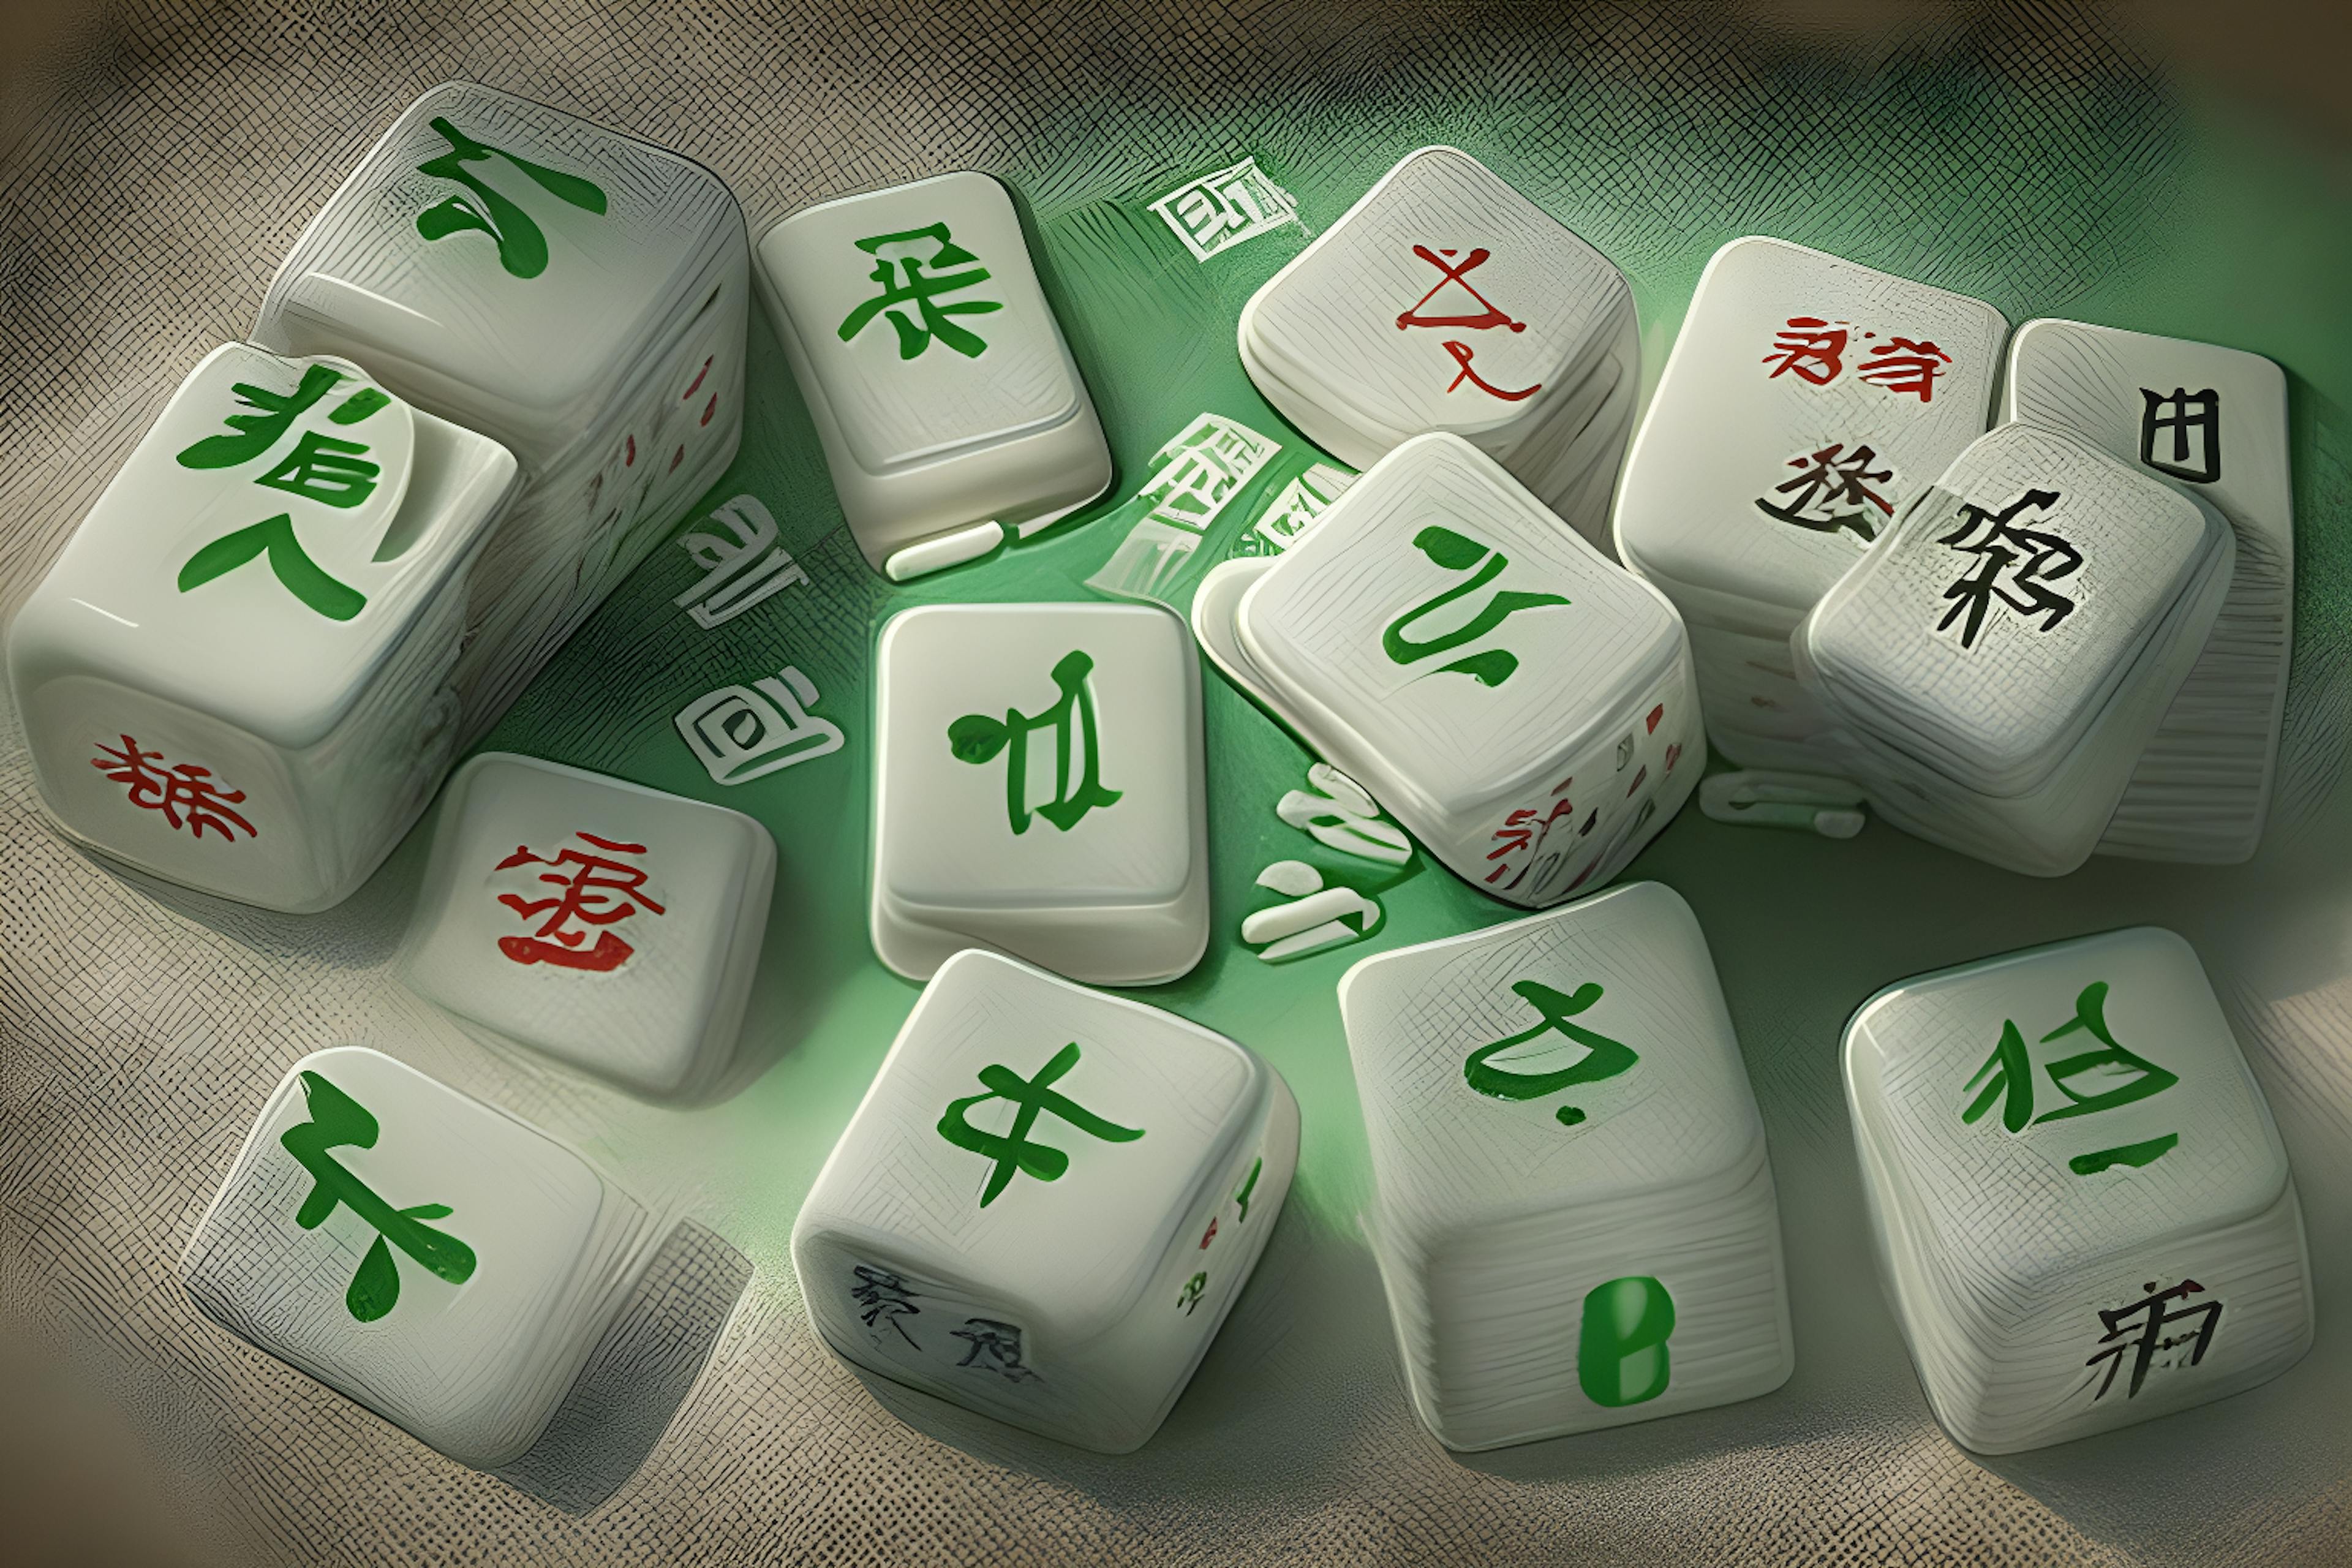 featured image - 0xMahjong NFT comenzará la acuñación gratuita: Mahjong Meta Game espera más de $ 10 millones en fondos